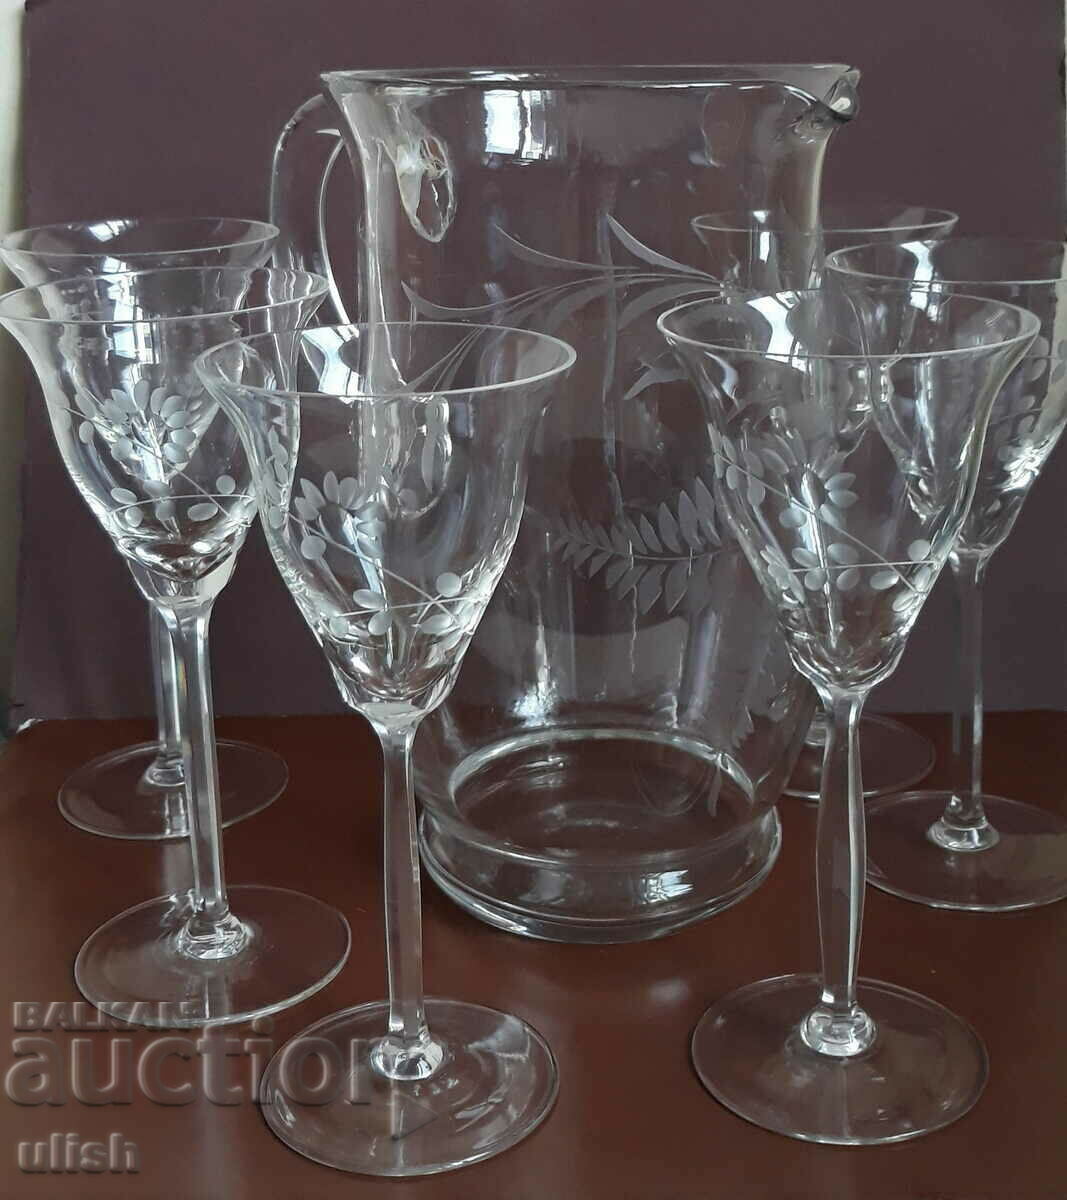 Retro crystal wine set 6 glasses + jug